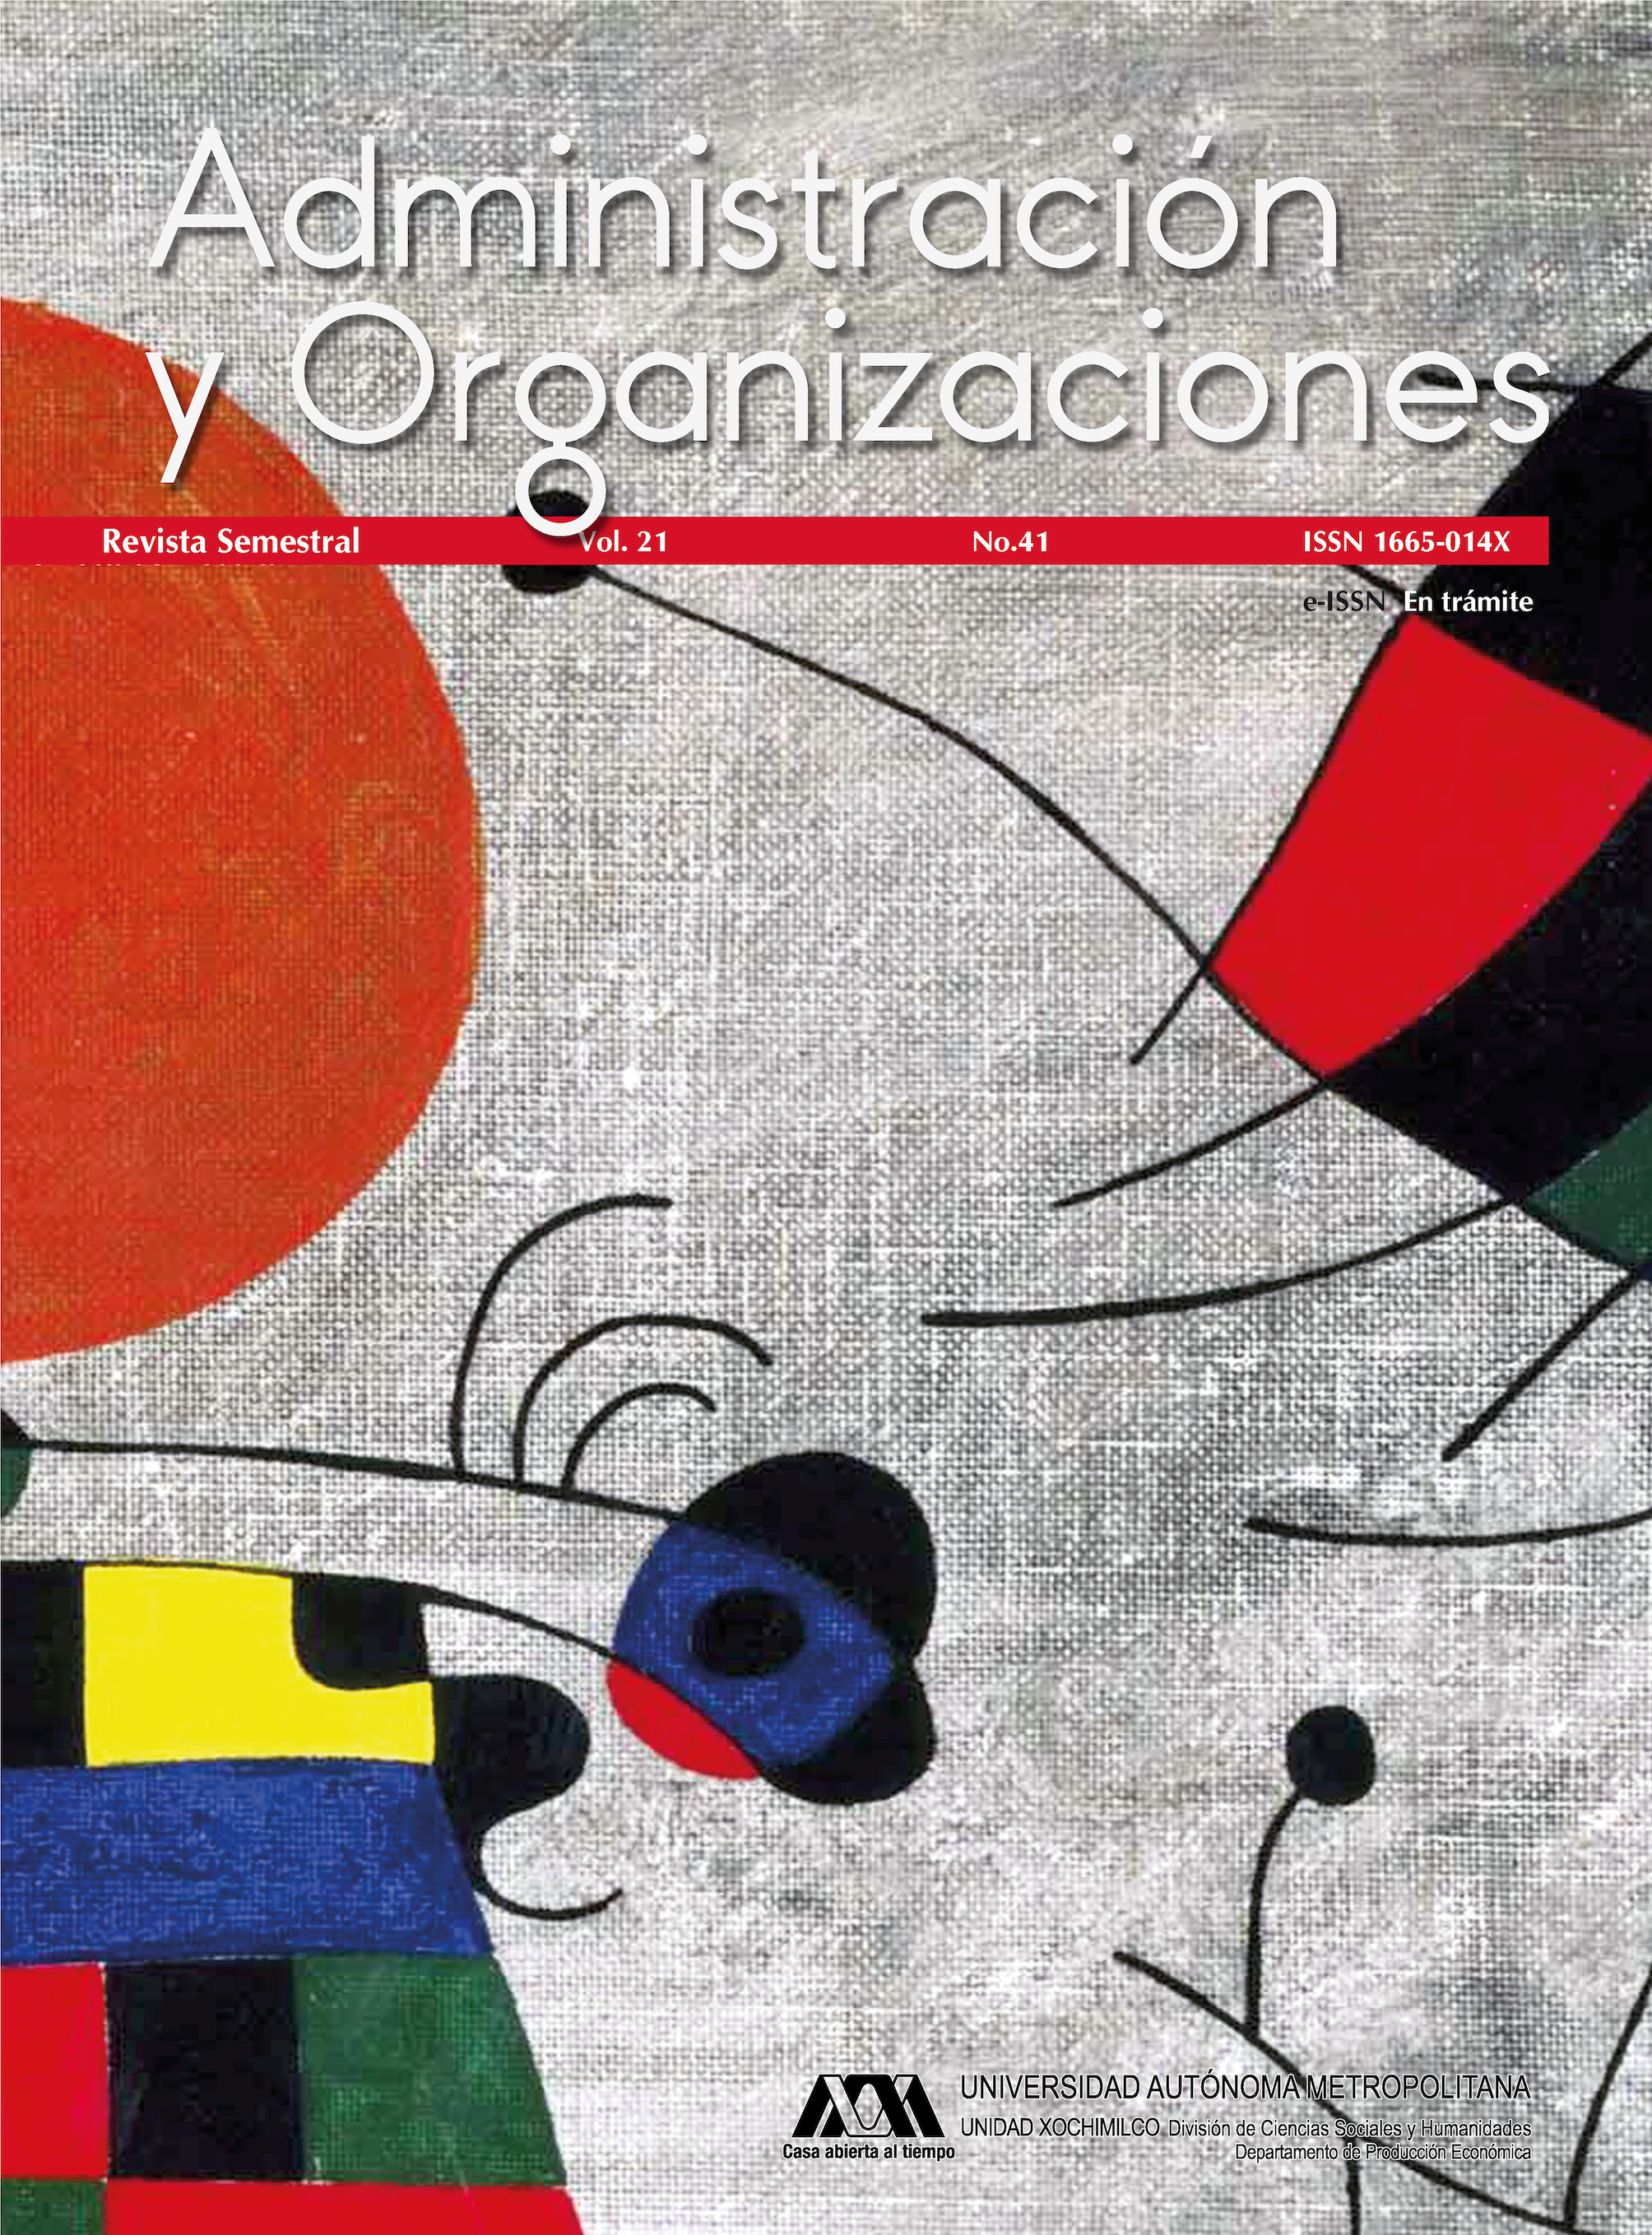 					Ver Vol. 21 Núm. 41 (21): Administración y Organizaciones
				